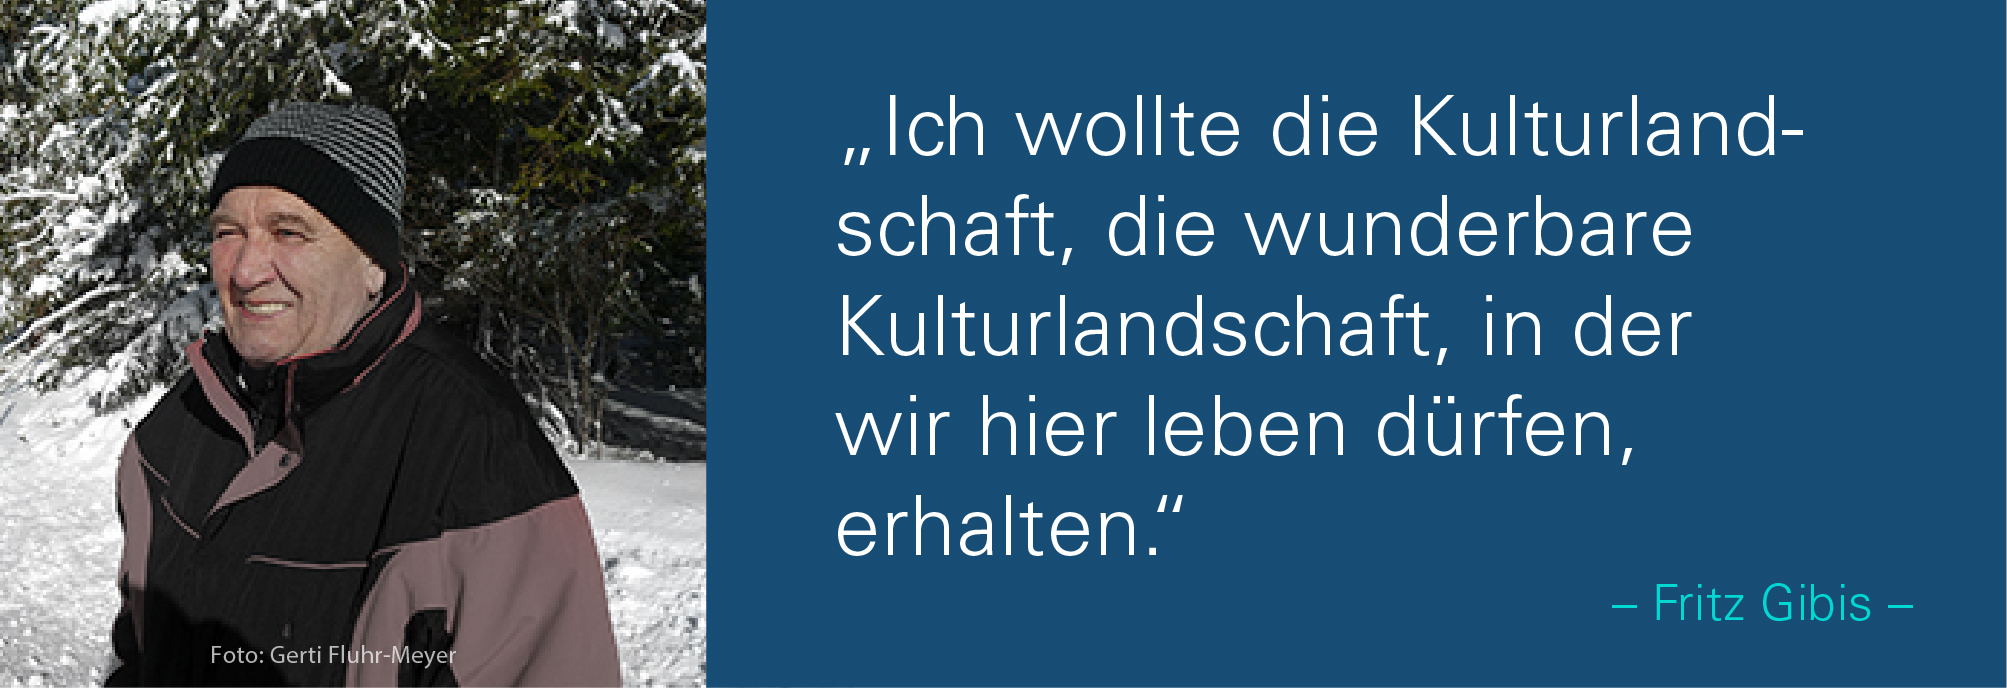 Porträt von Fritz Gibis im winterlichen Wald mit Schnee und dem Zitat: Ich wollte die Kulturlandschaft, die wunderbare Kultur-landschaft, in der wir hier leben dürfen, erhalten.